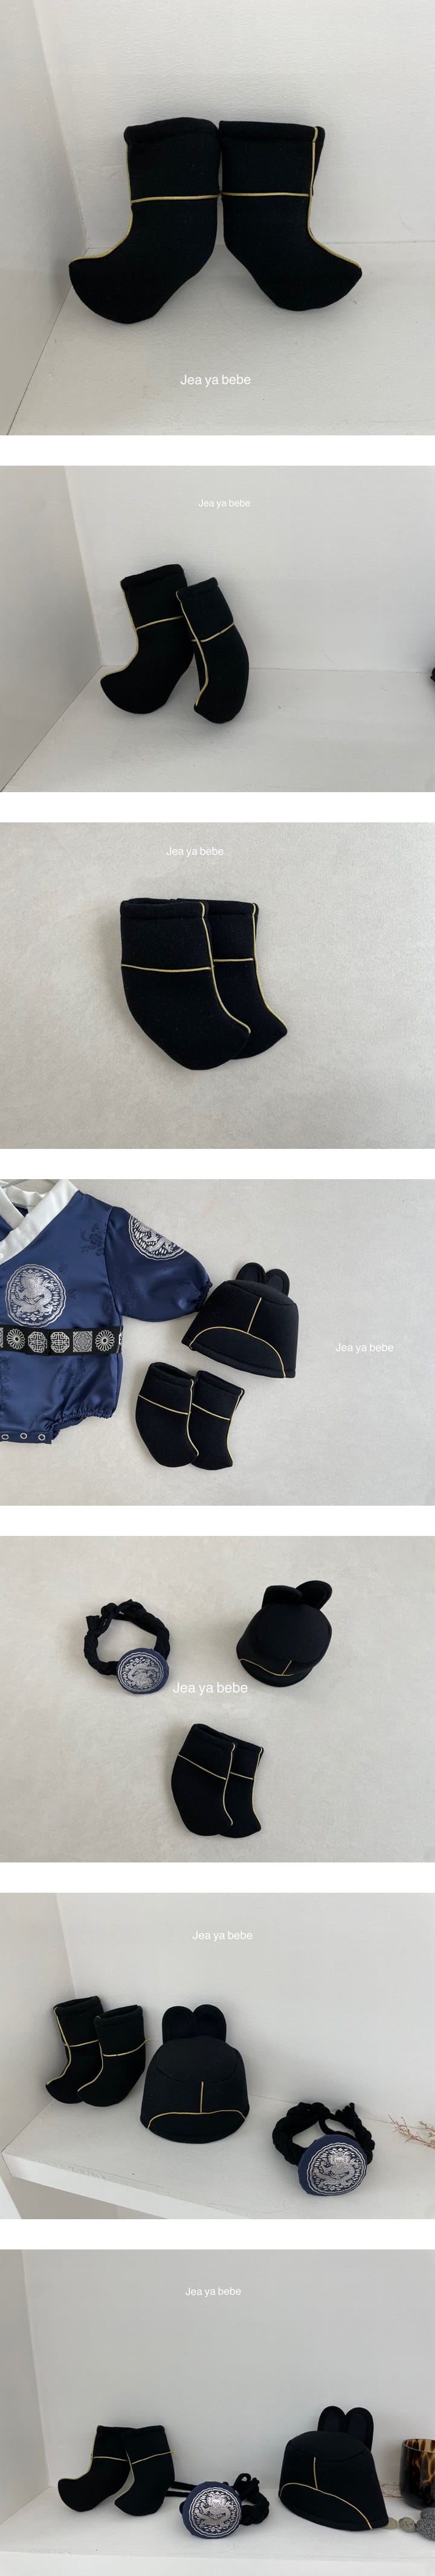 Jeaya & Mymi - Korean Baby Fashion - #babyootd - Prince Socks